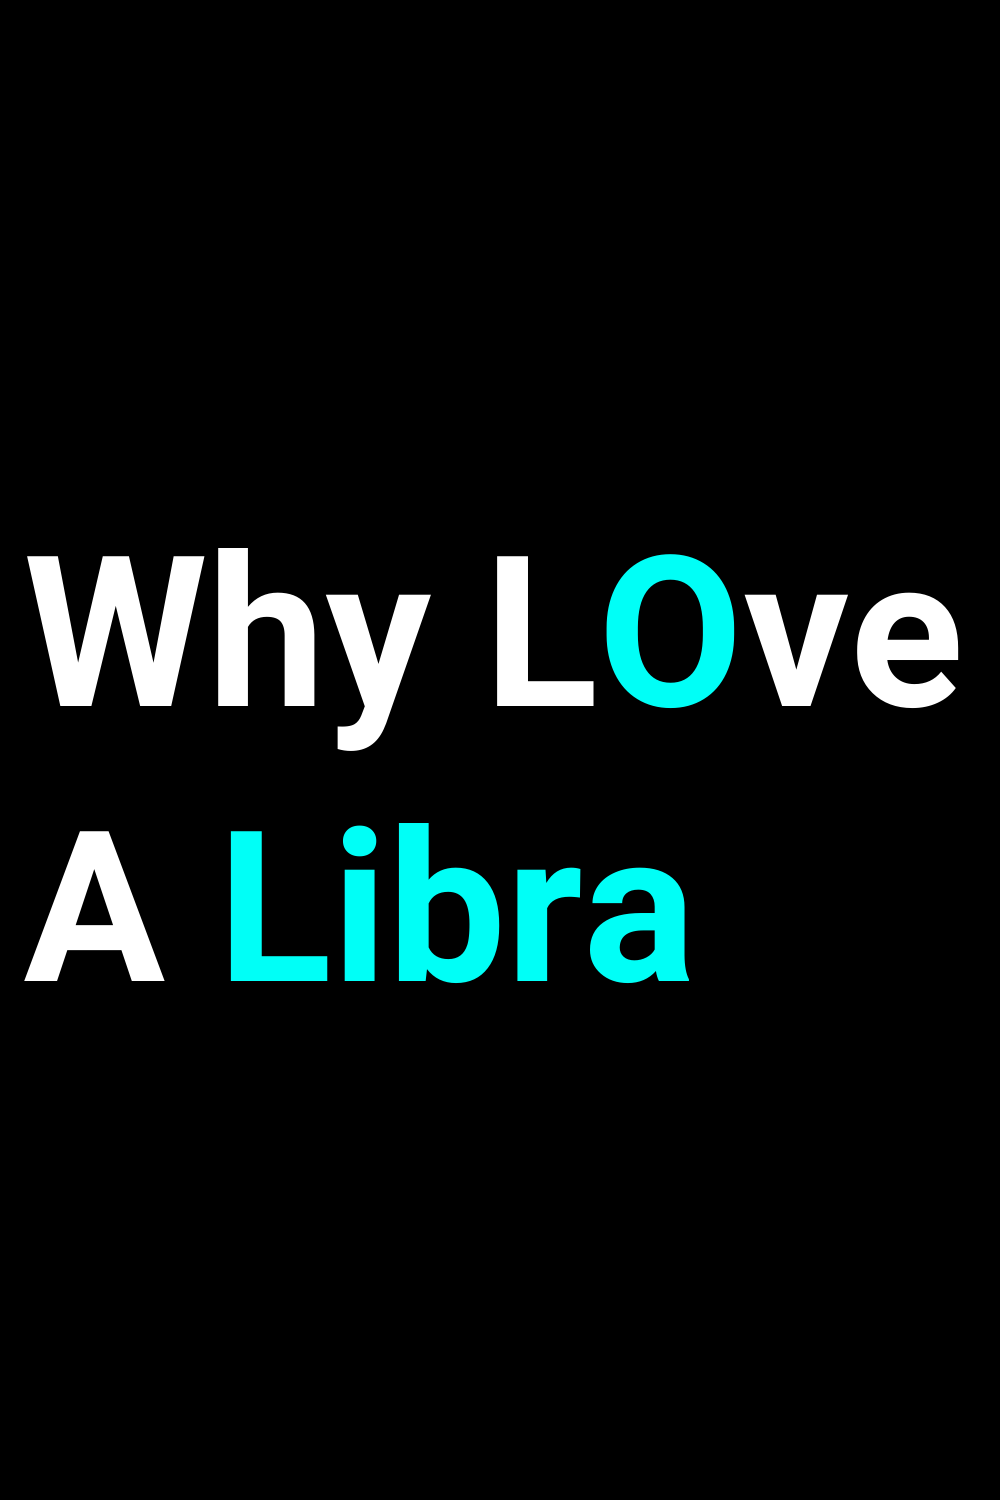 Why Love A Libra